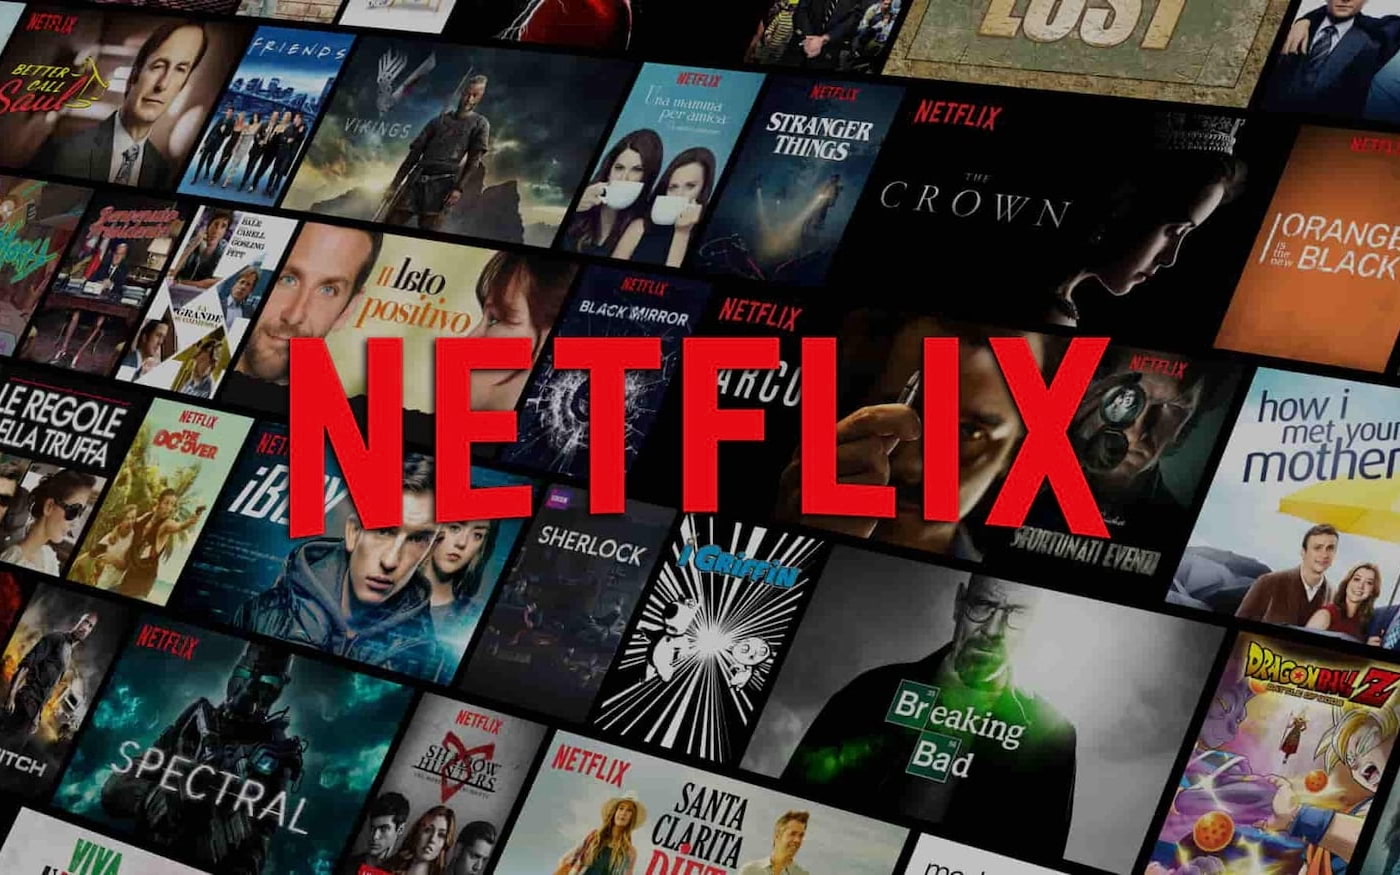 Fãs da Netflix odeiam popular filme por ser confuso demais